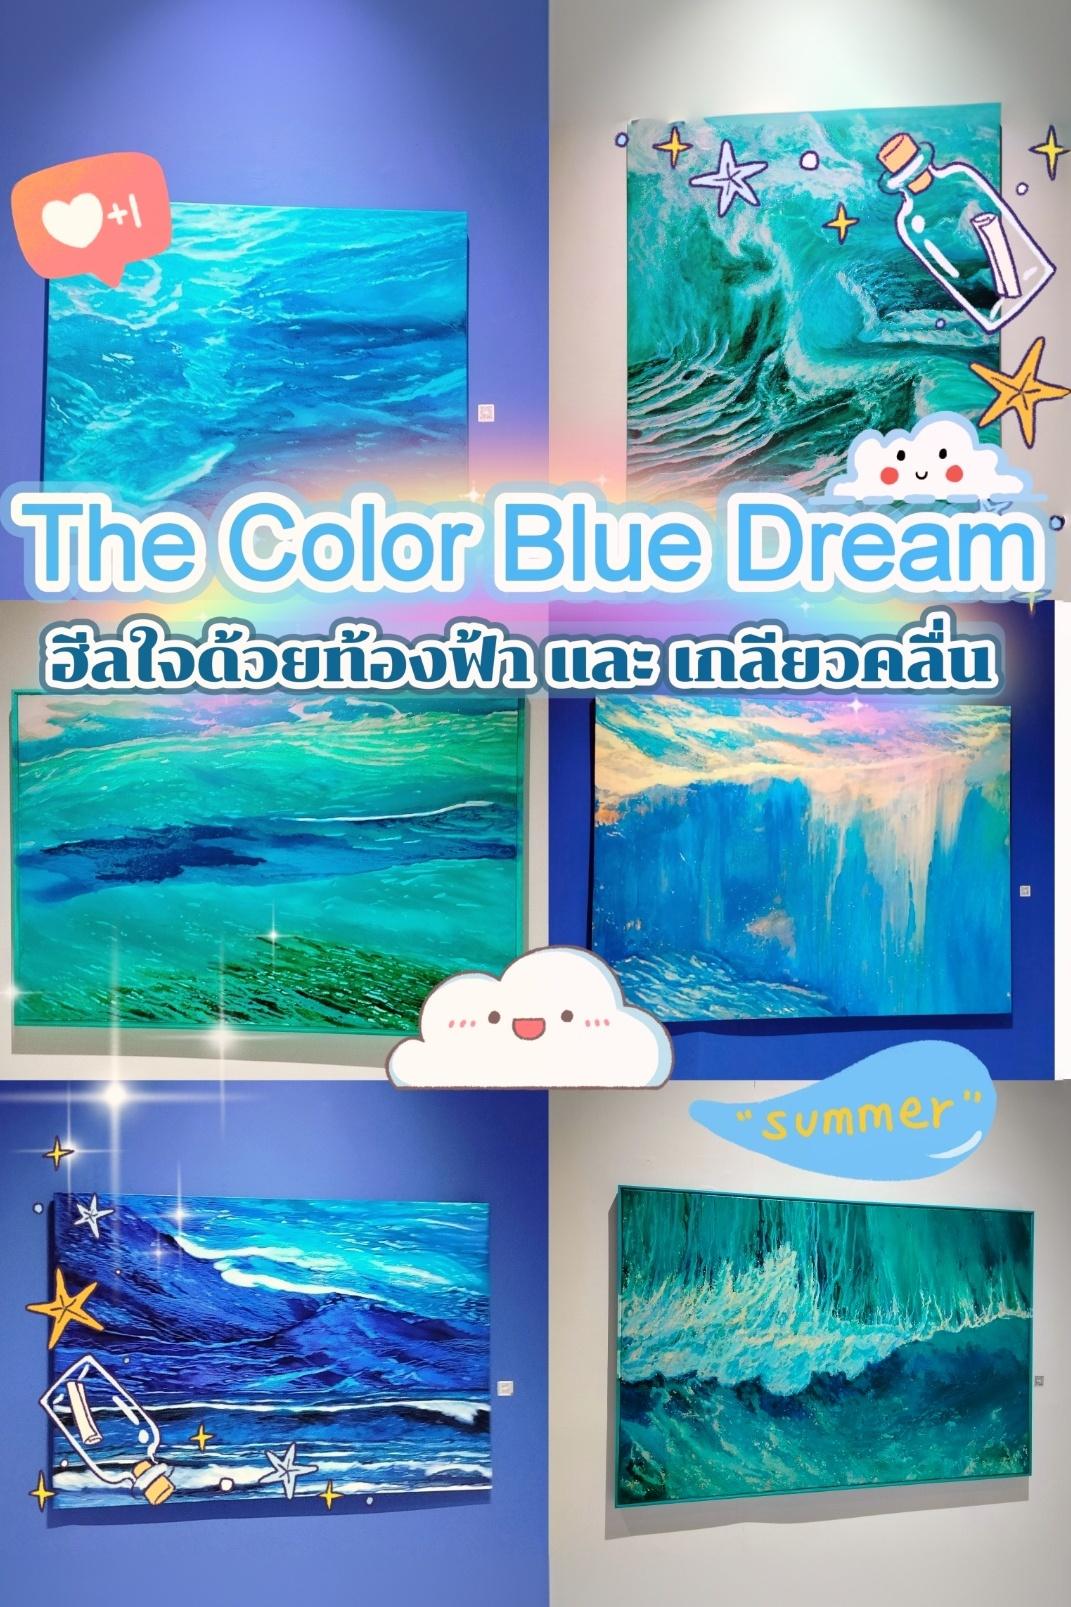 ✨นิทรรศการสีฟ้า The Color Blue Dream ที่ดีต่อใจ🌊🌥️